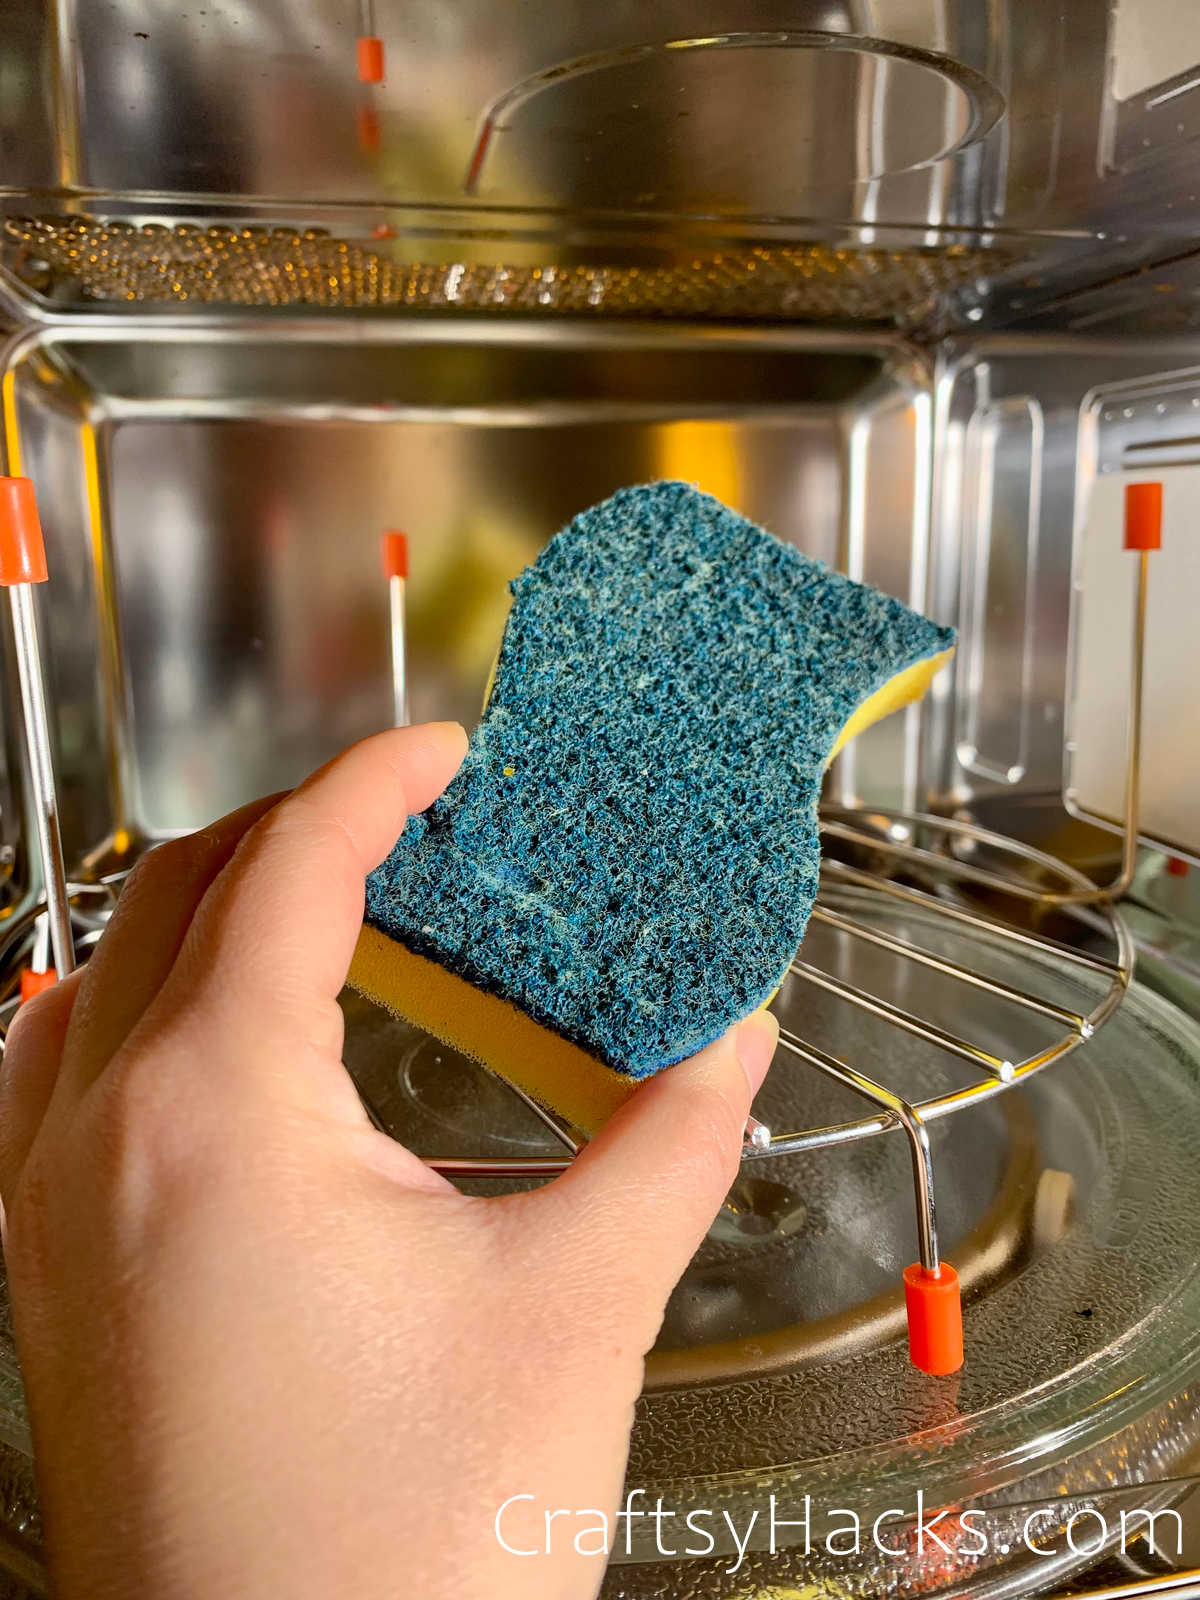 microwave sponge